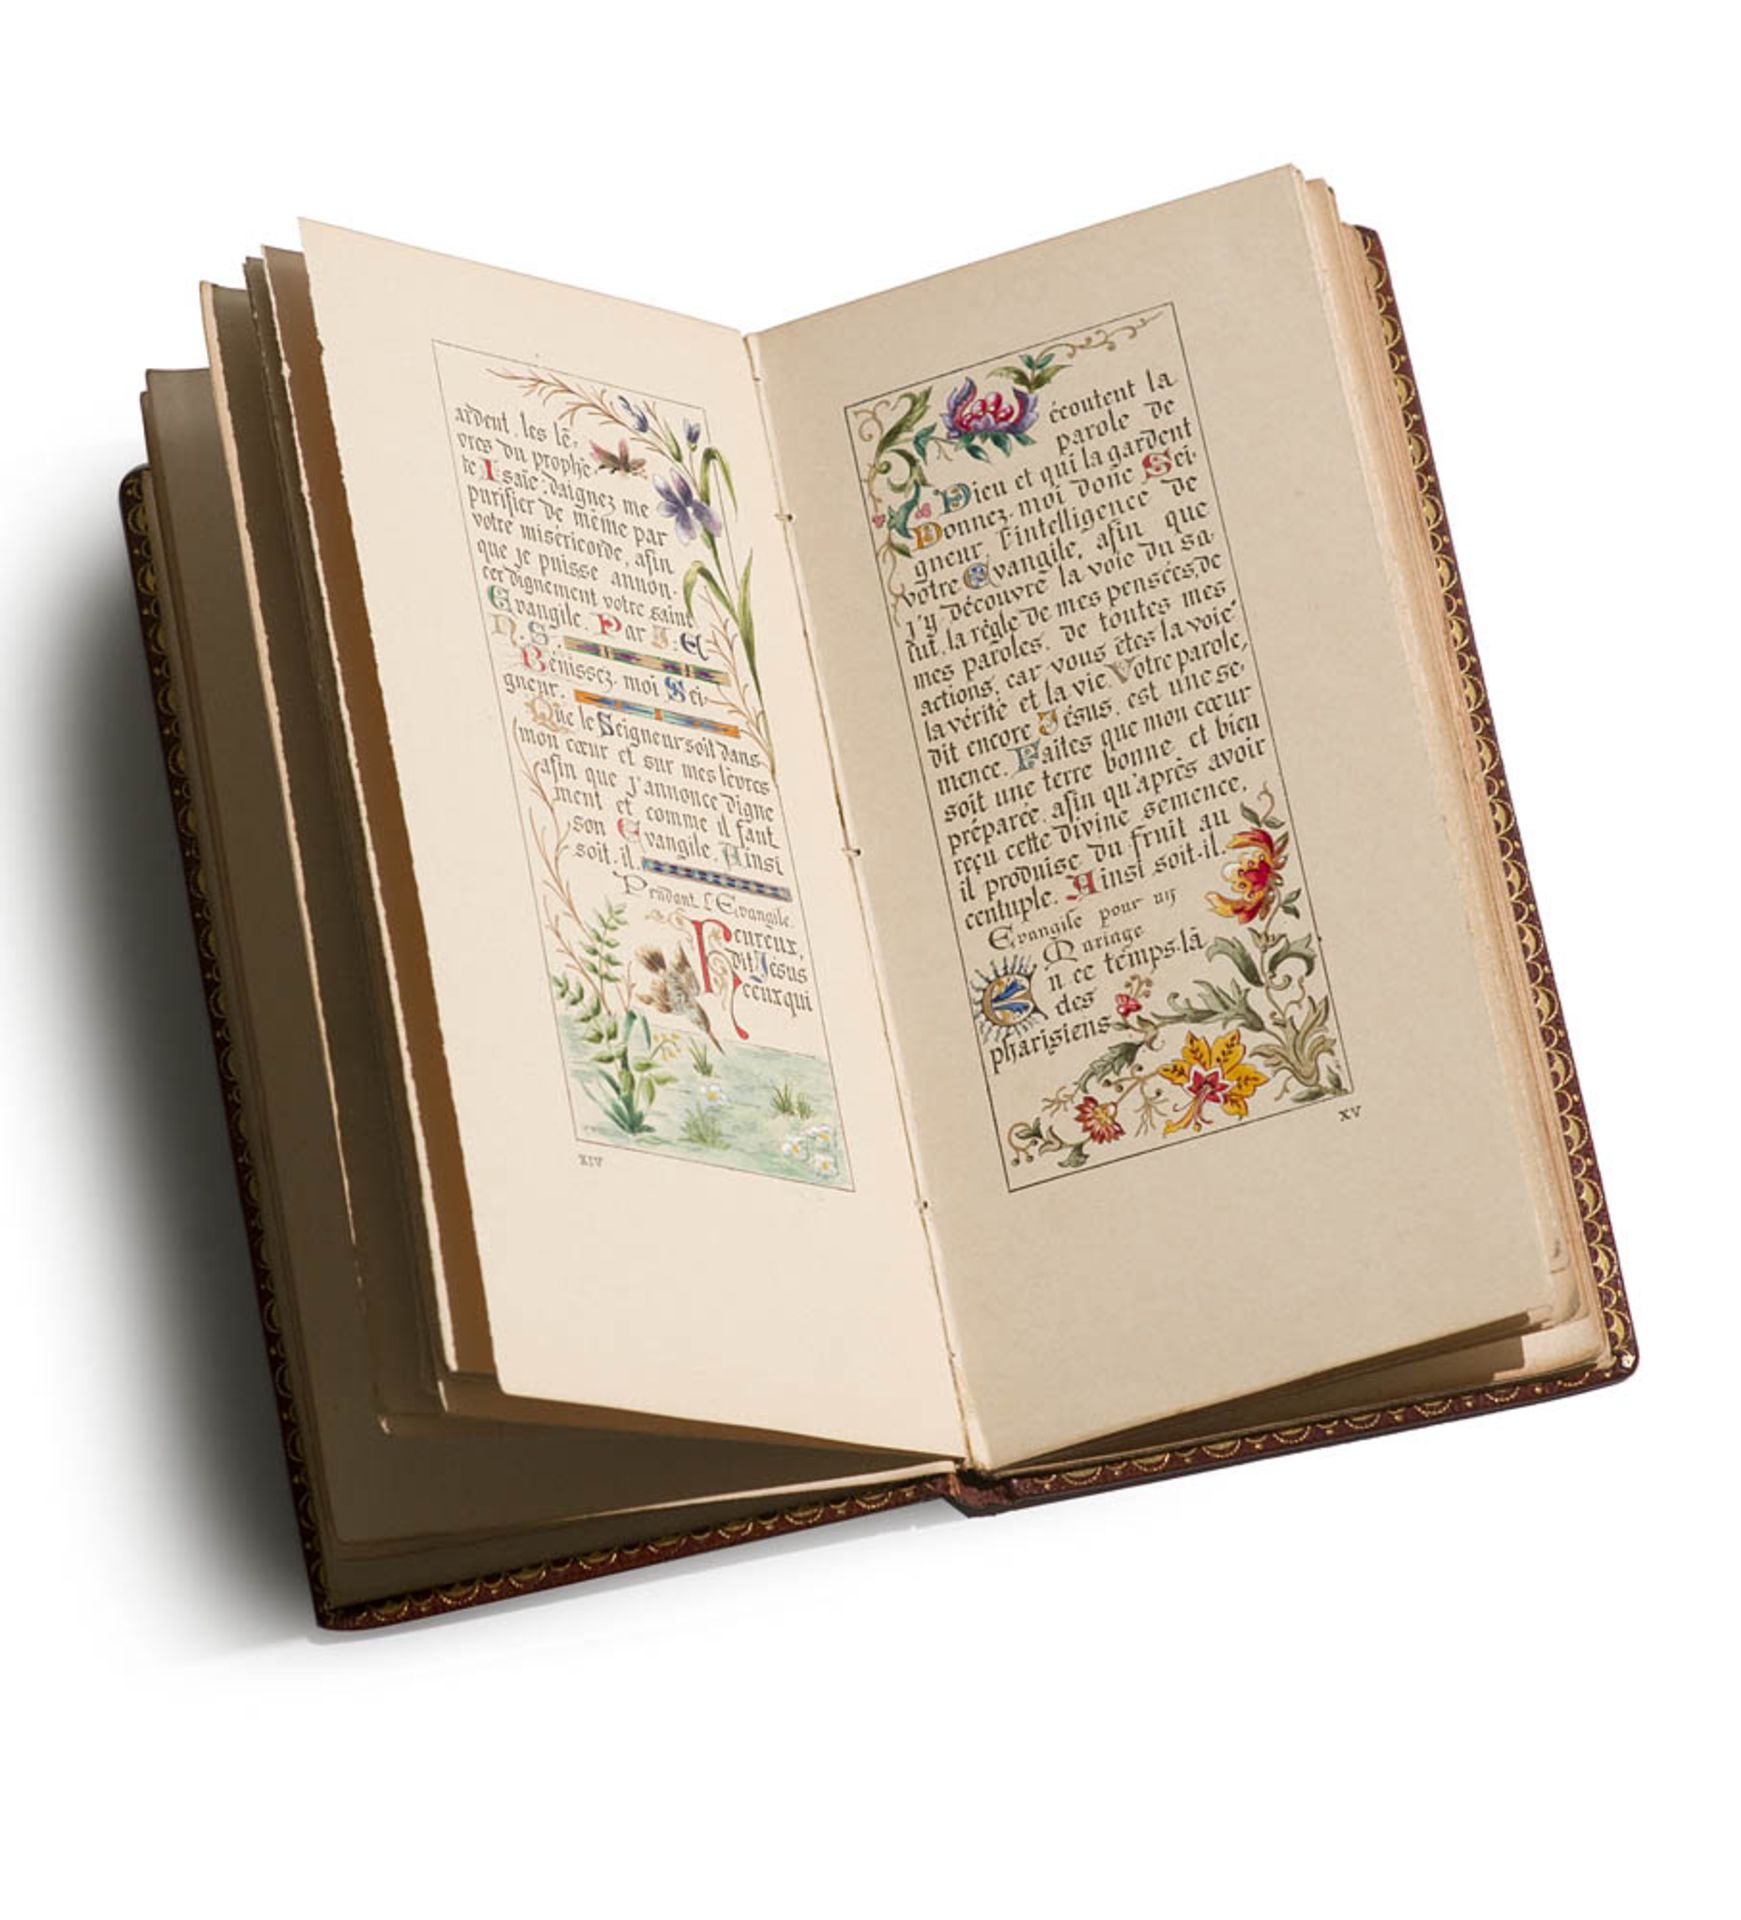 Stundenbuch - Messbuch - - L'Ordinaire de la Messe selon le Rite Romain accompagne de L'evangile